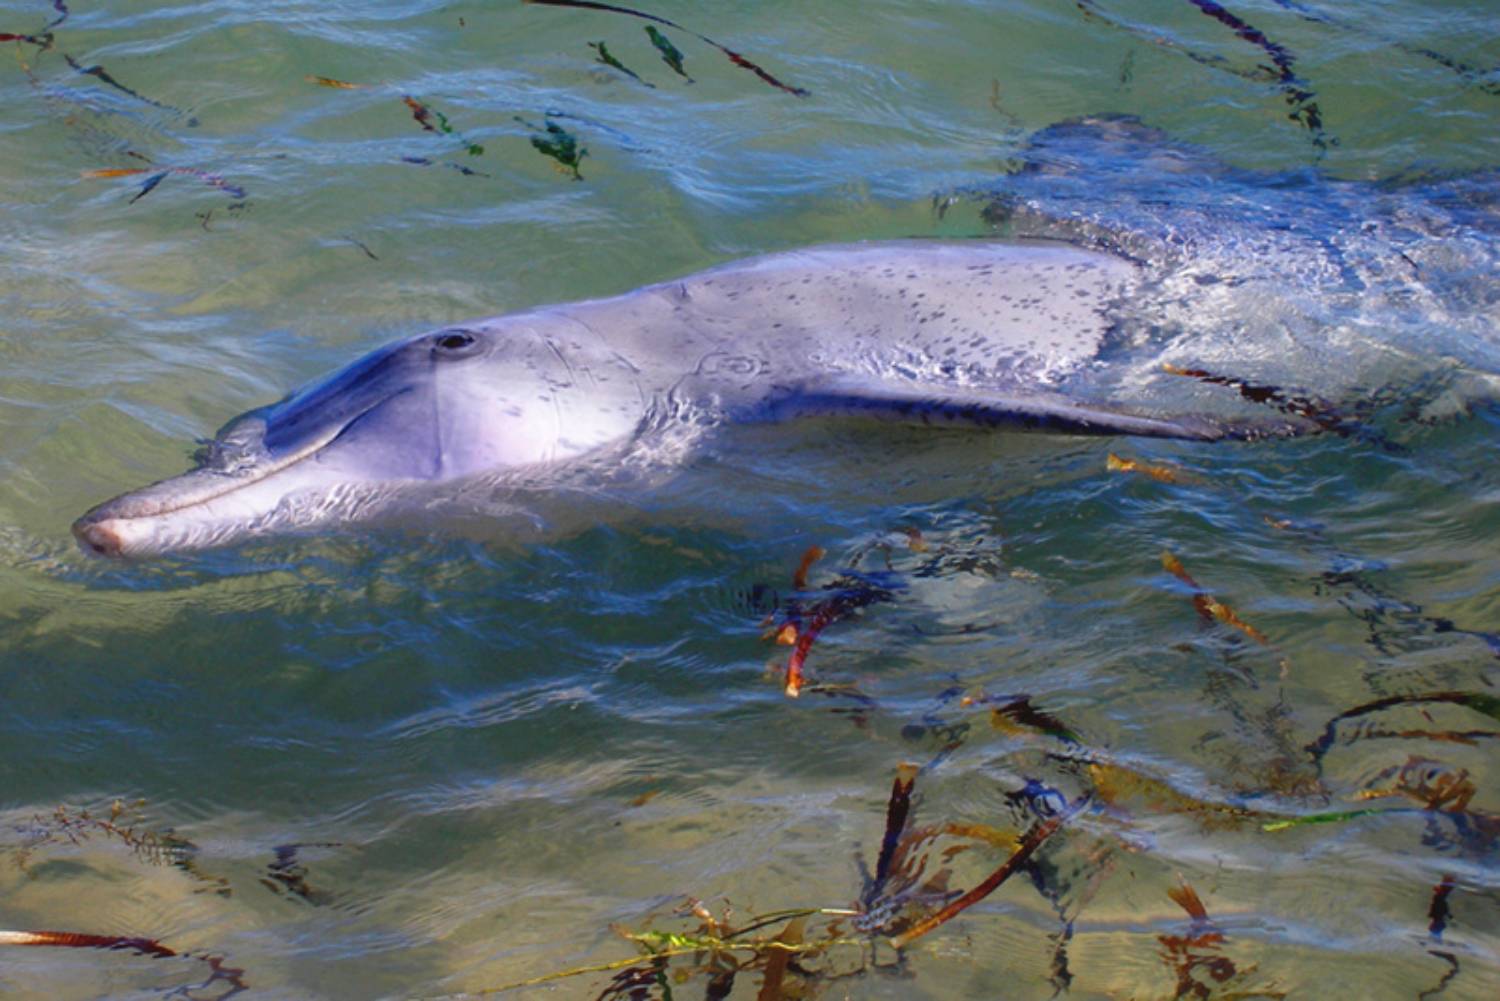 Grand dauphin - Shark Bay